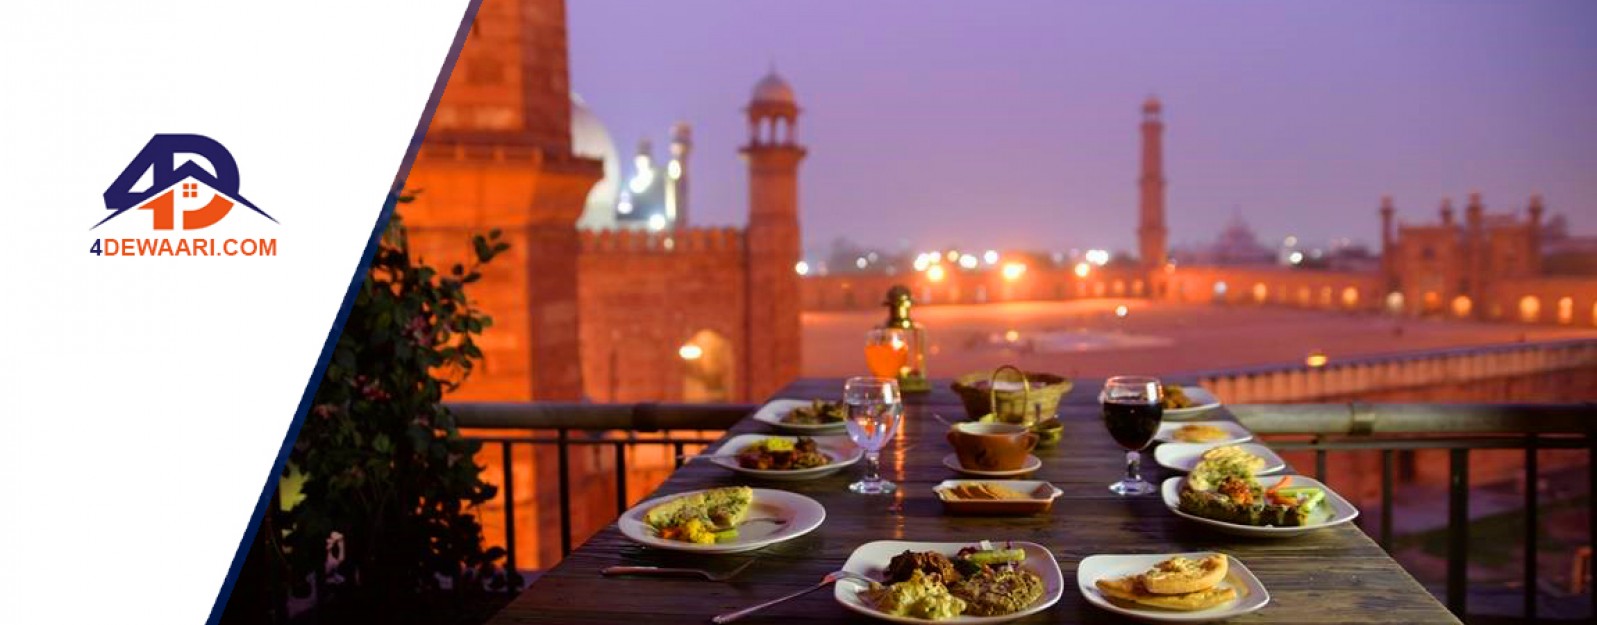 Top Best Restaurants in Lahore Pakistan for Dinner